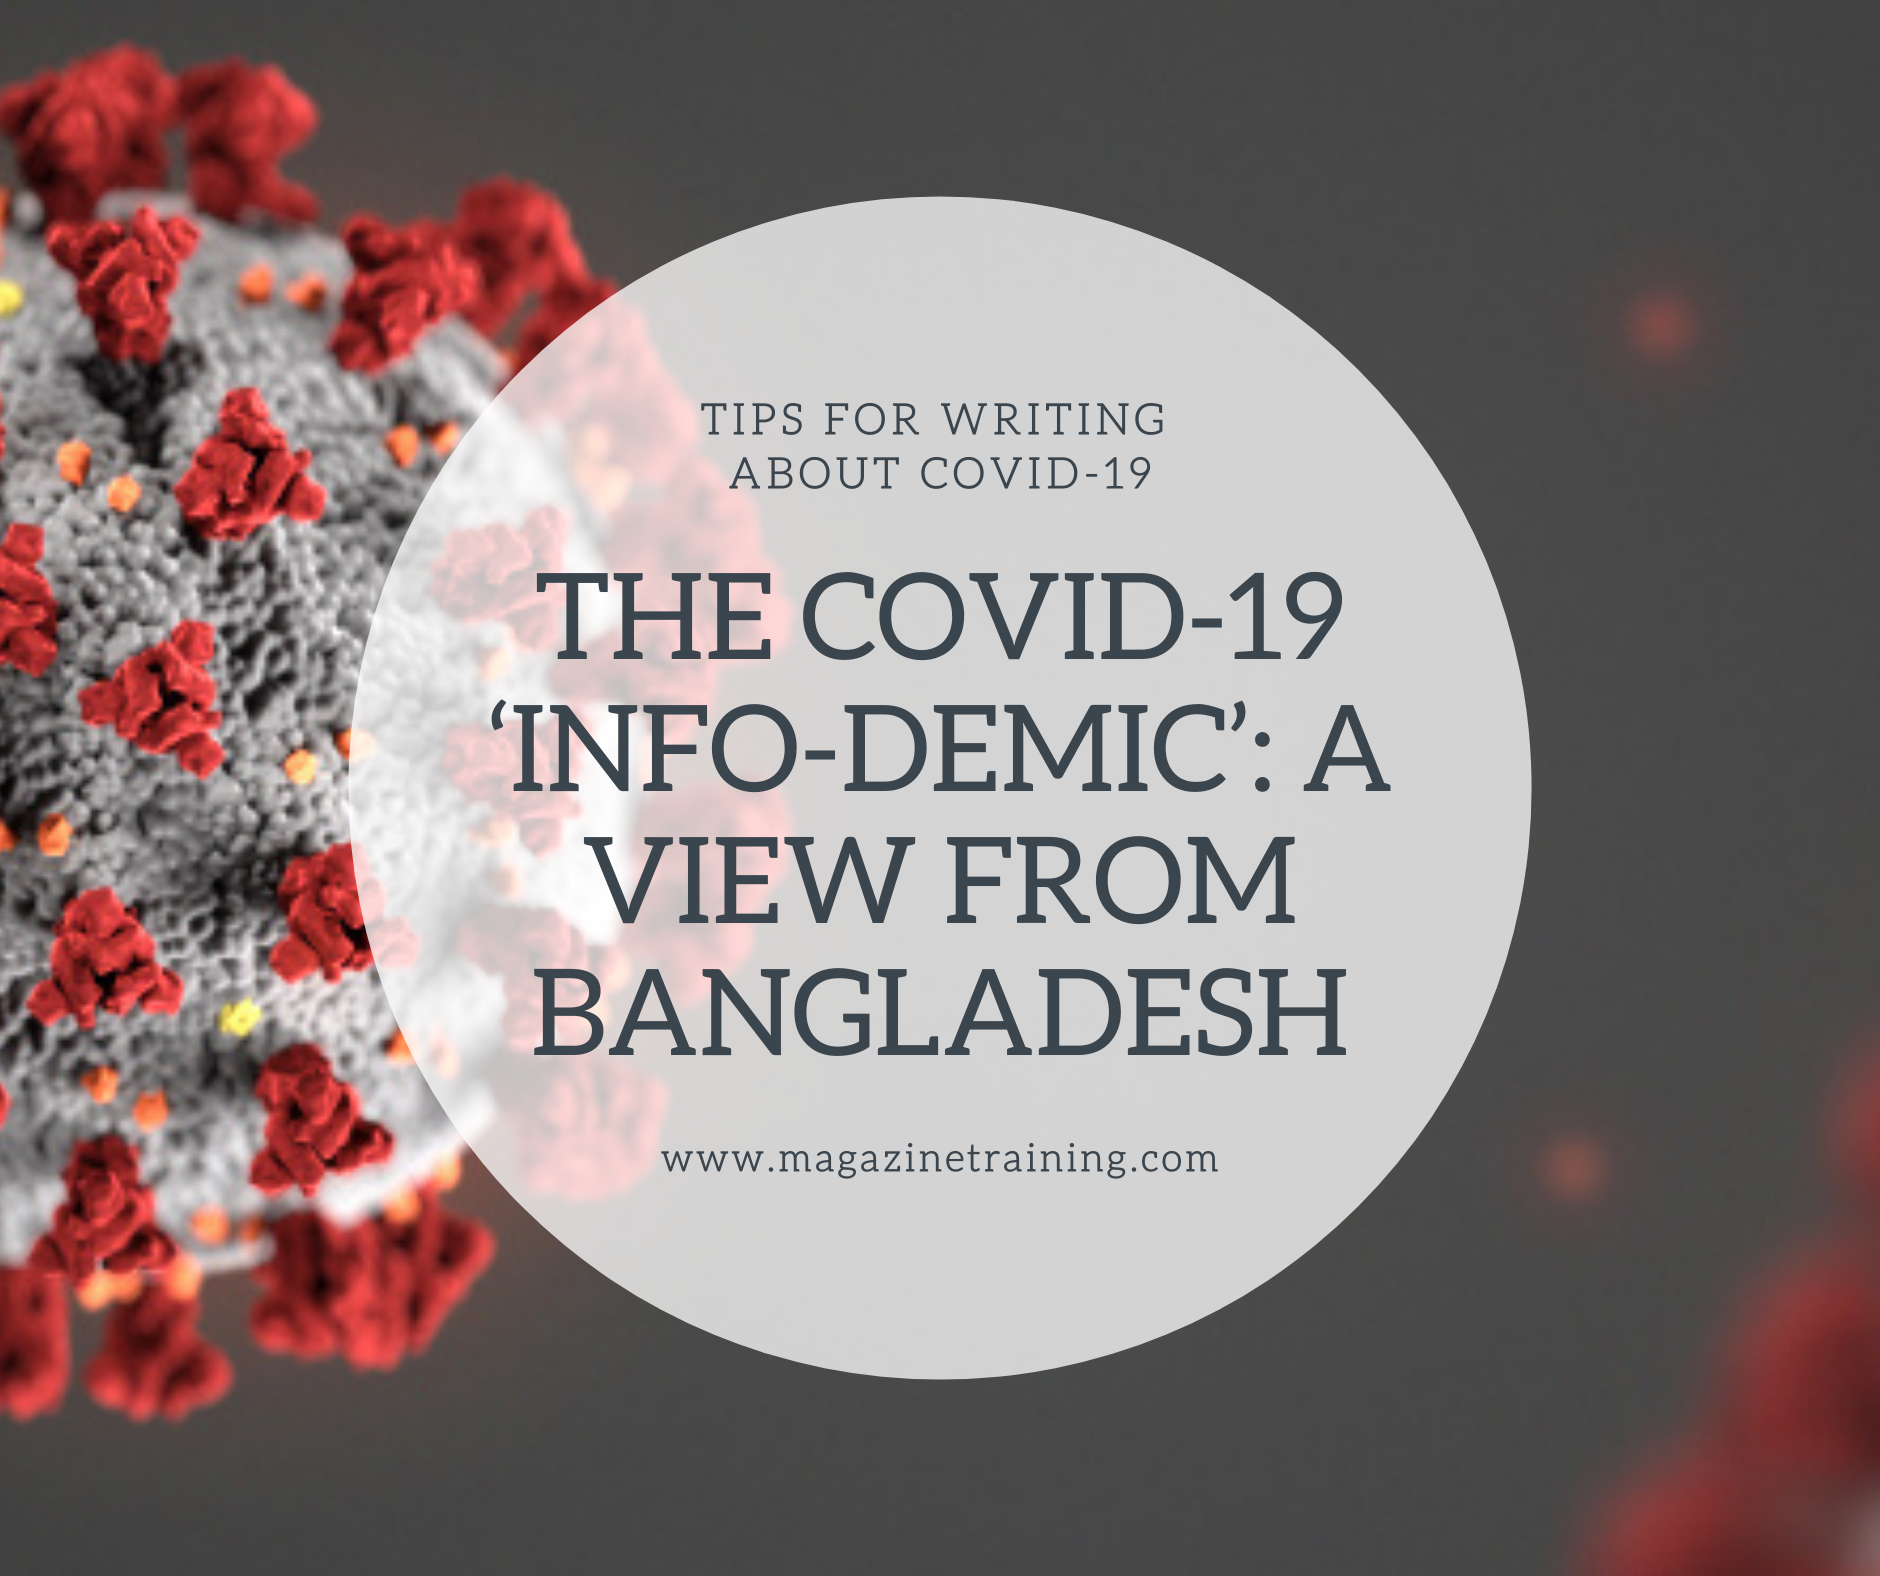 COVID-19 infodemic